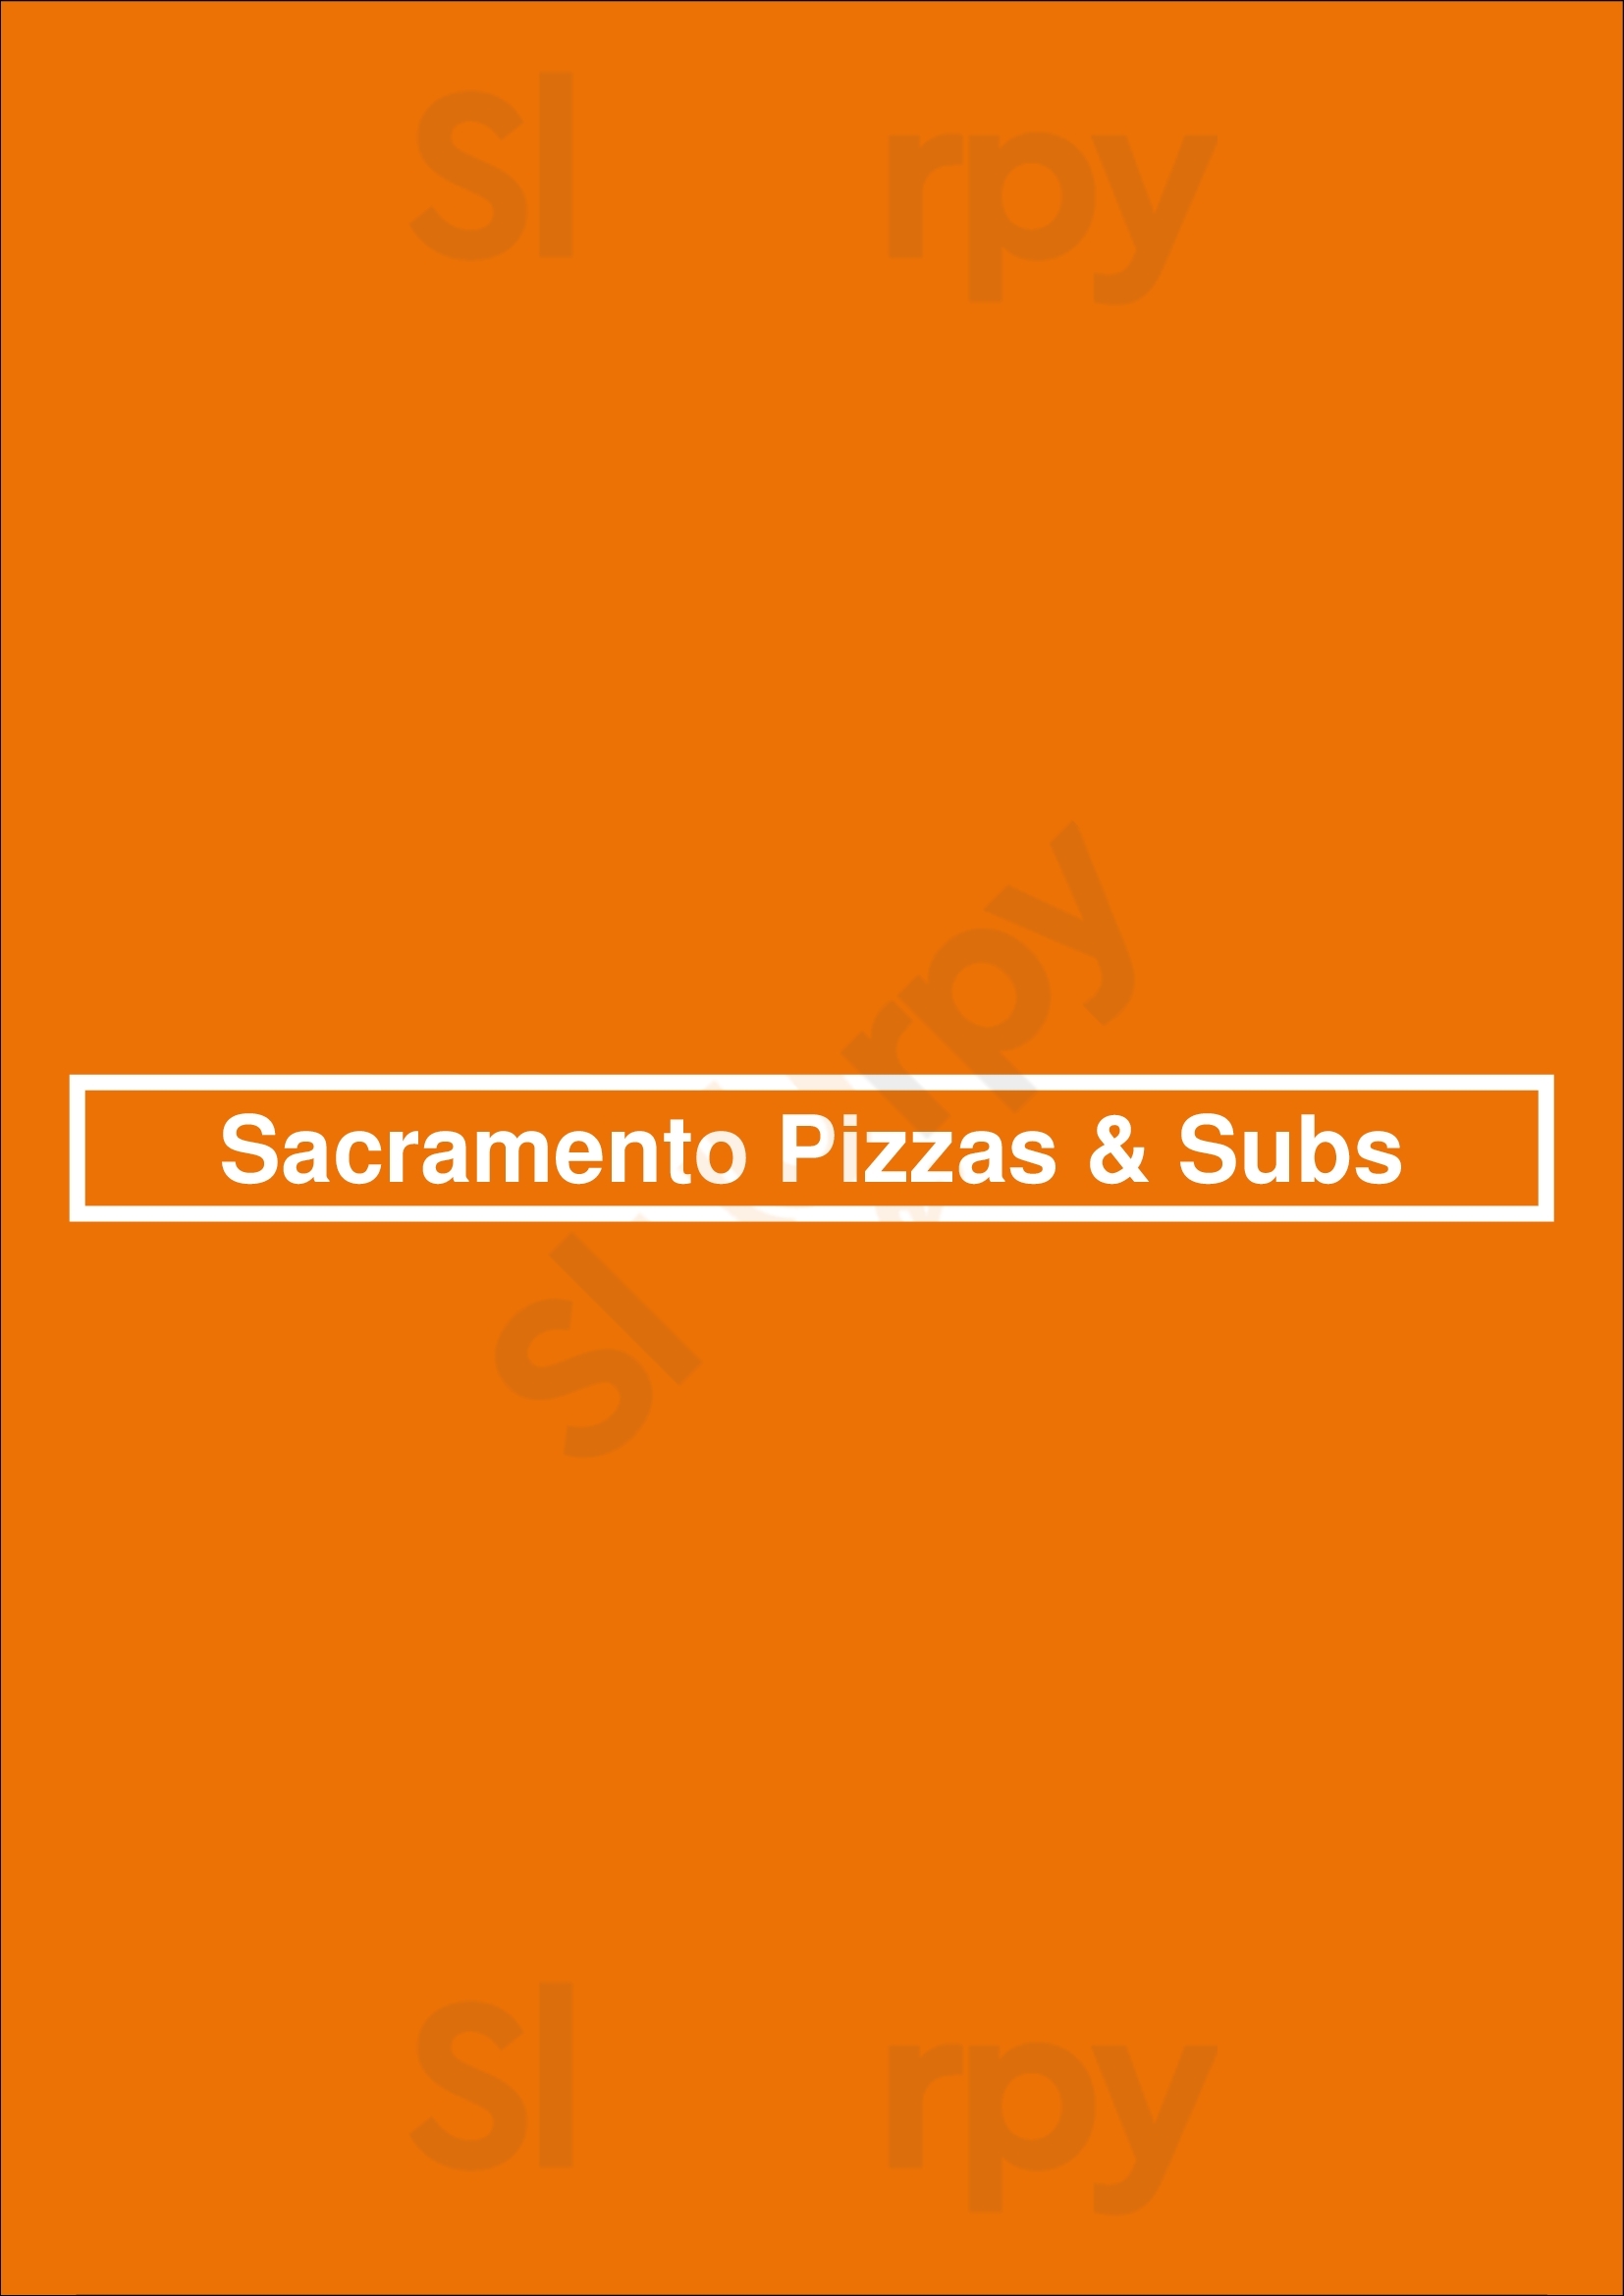 Sacramento Pizzas & Subs Sacramento Menu - 1